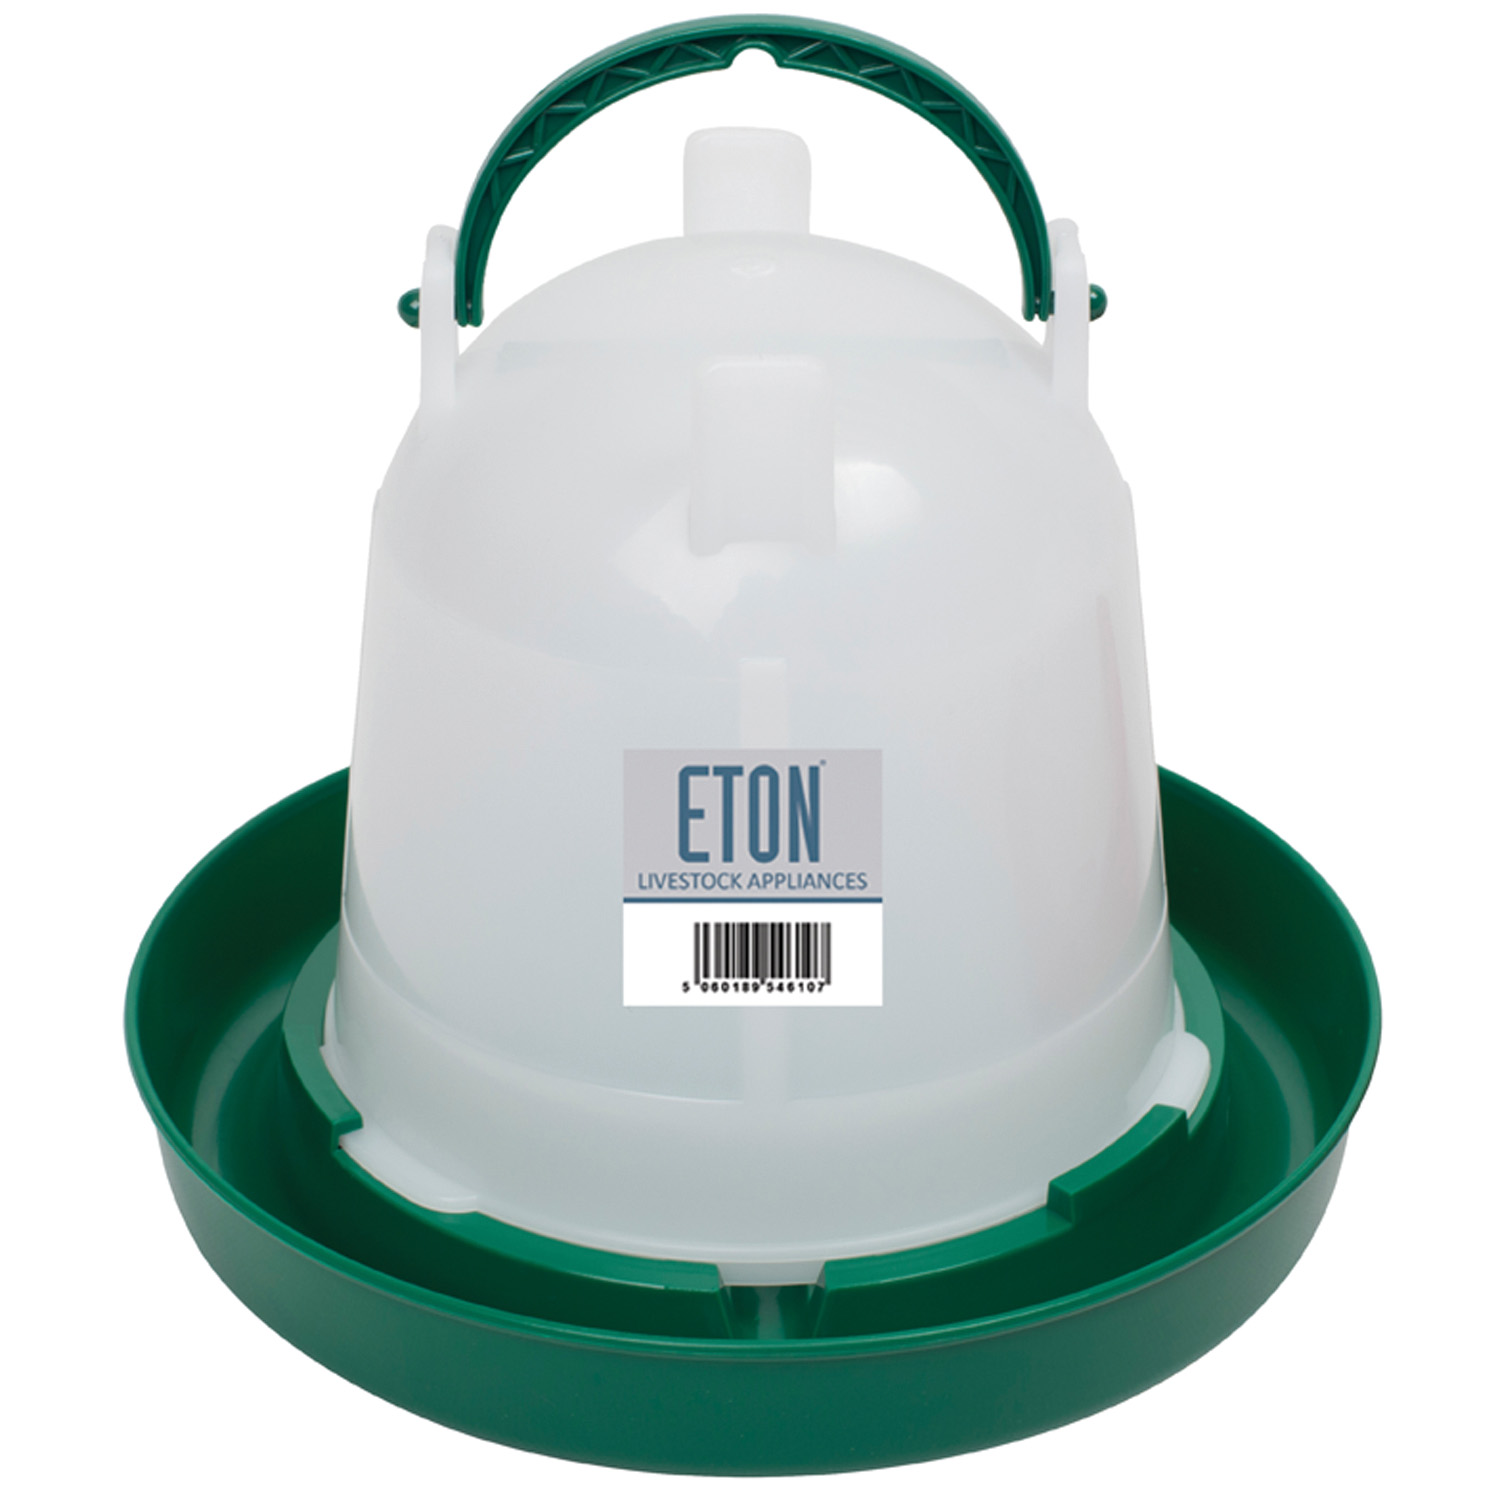 ETON TS POULTRY DRINKER GREEN 1.5 LT  GREEN